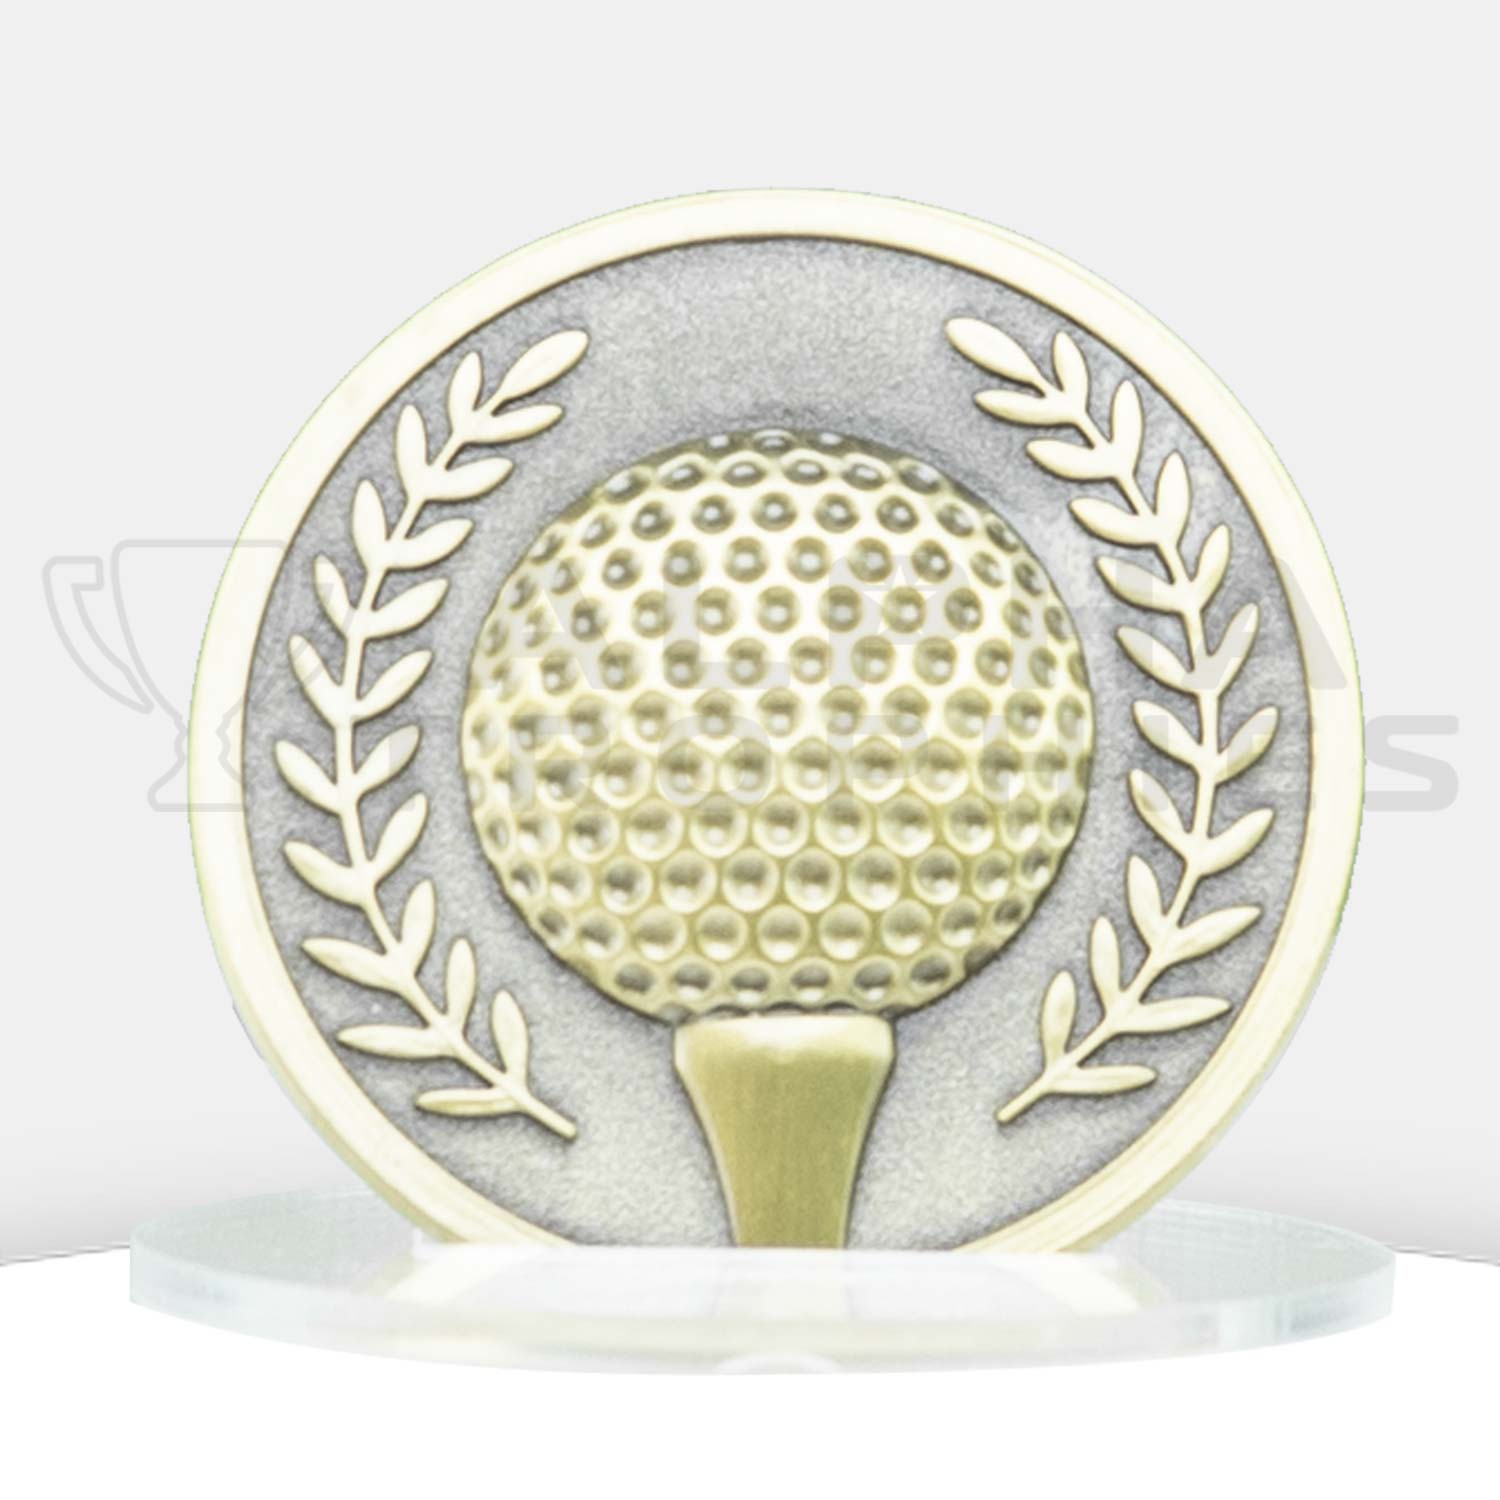 golf-prestige-medal-front